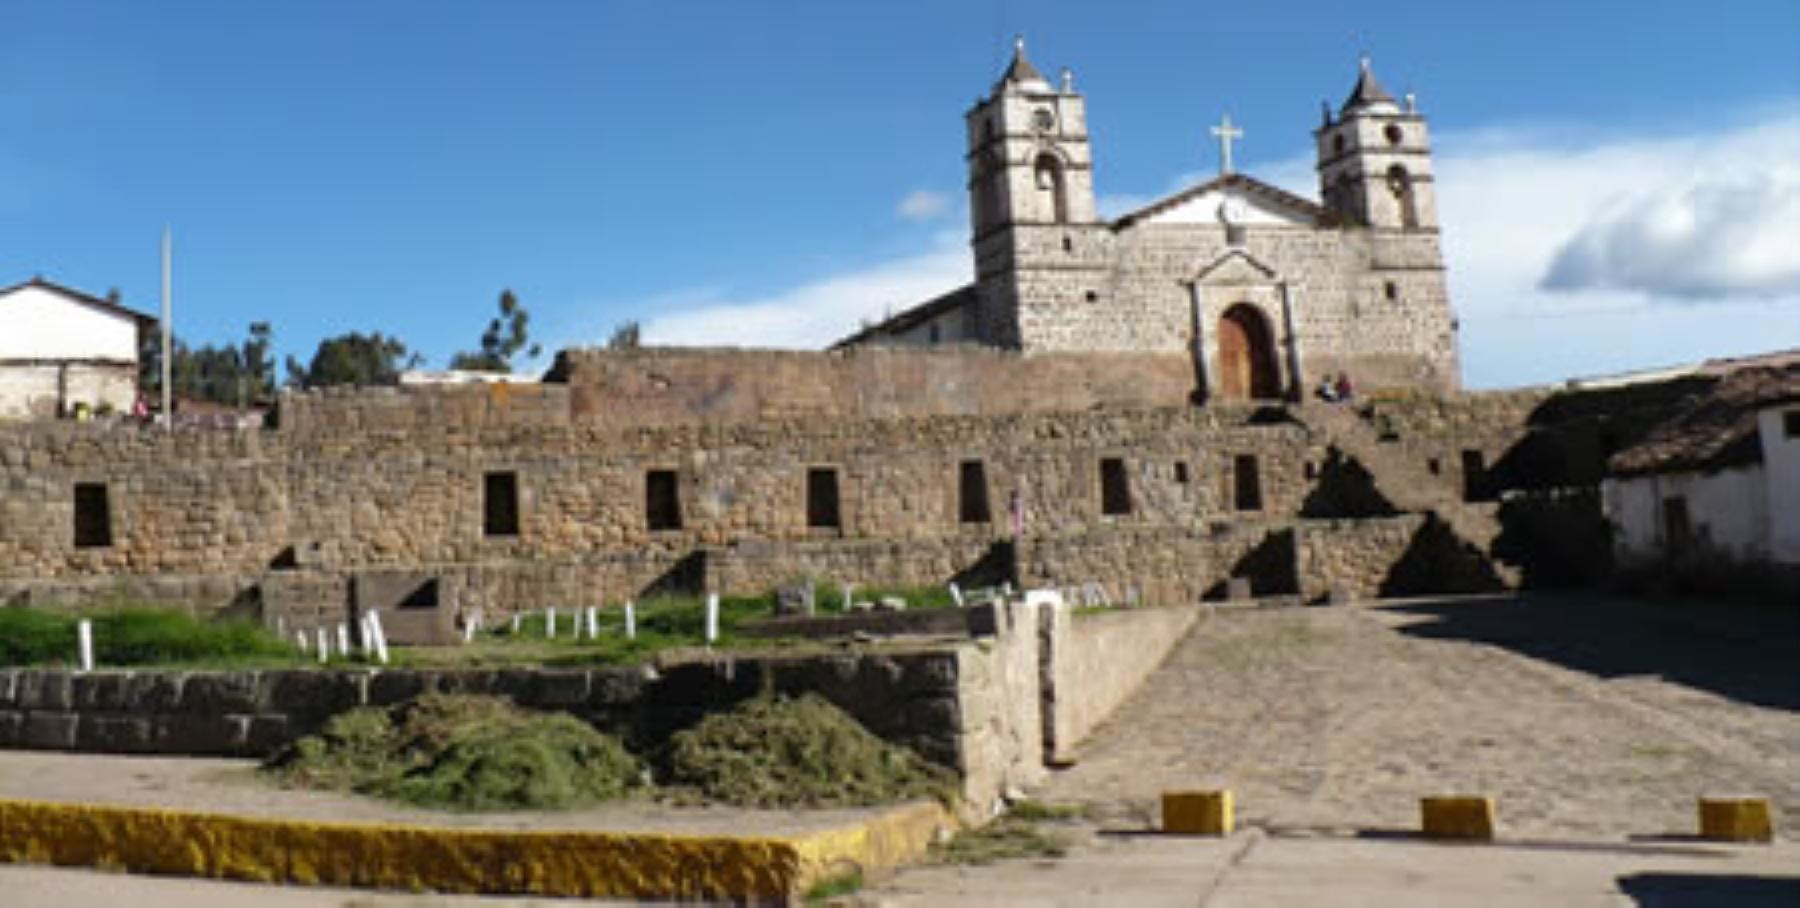 Vilcashuamán es otro lugar que no puede dejar de visitarse, pues se trata de un centro administrativo incaico localizado a 117 kilómetros al sureste de Ayacucho y que llegó a albergar en su momento de mayor esplendor a 40,000 habitantes.